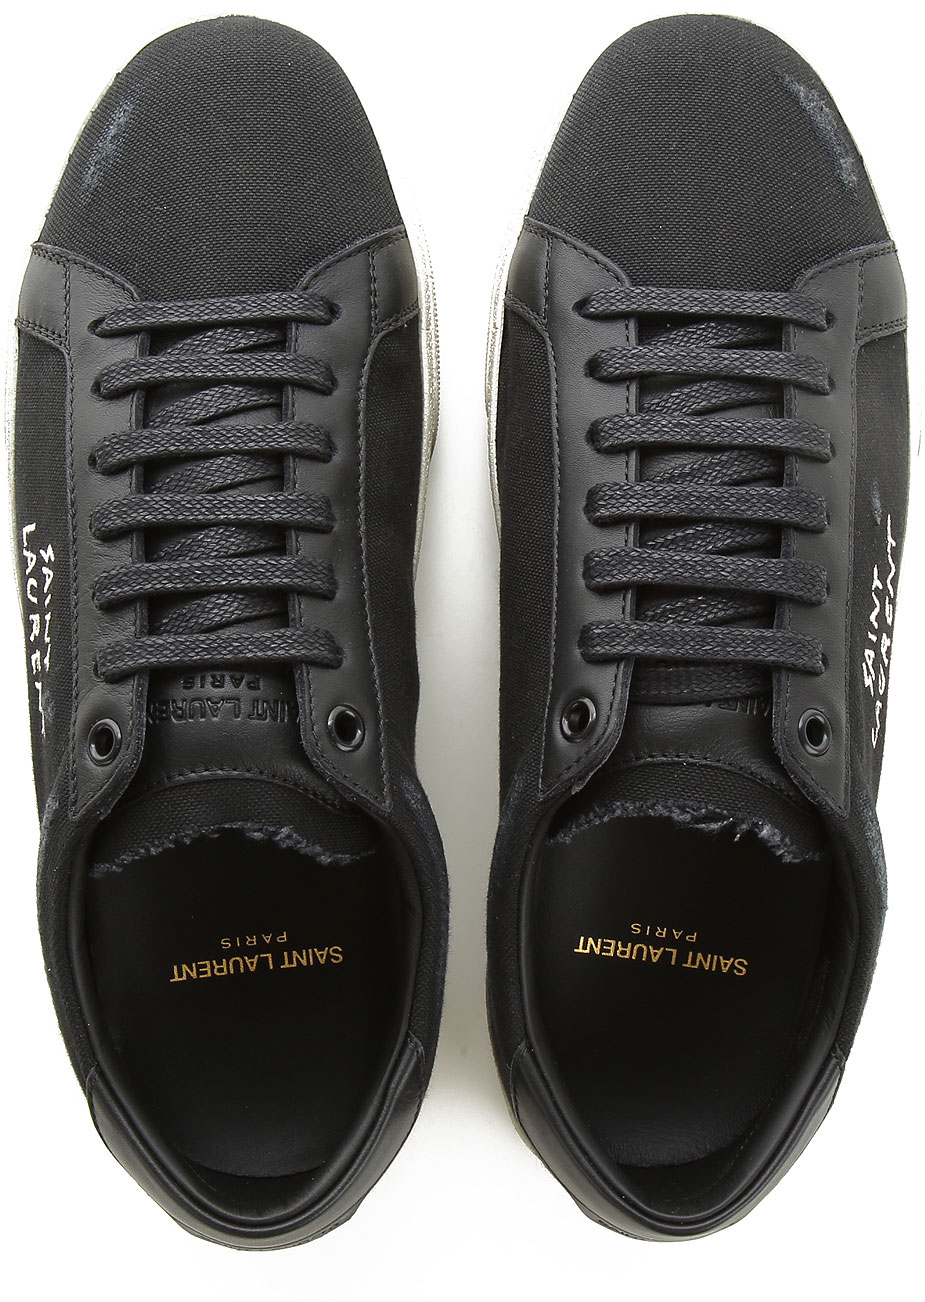 Mens Shoes Saint Laurent, Style code: 611106-gup50-1000